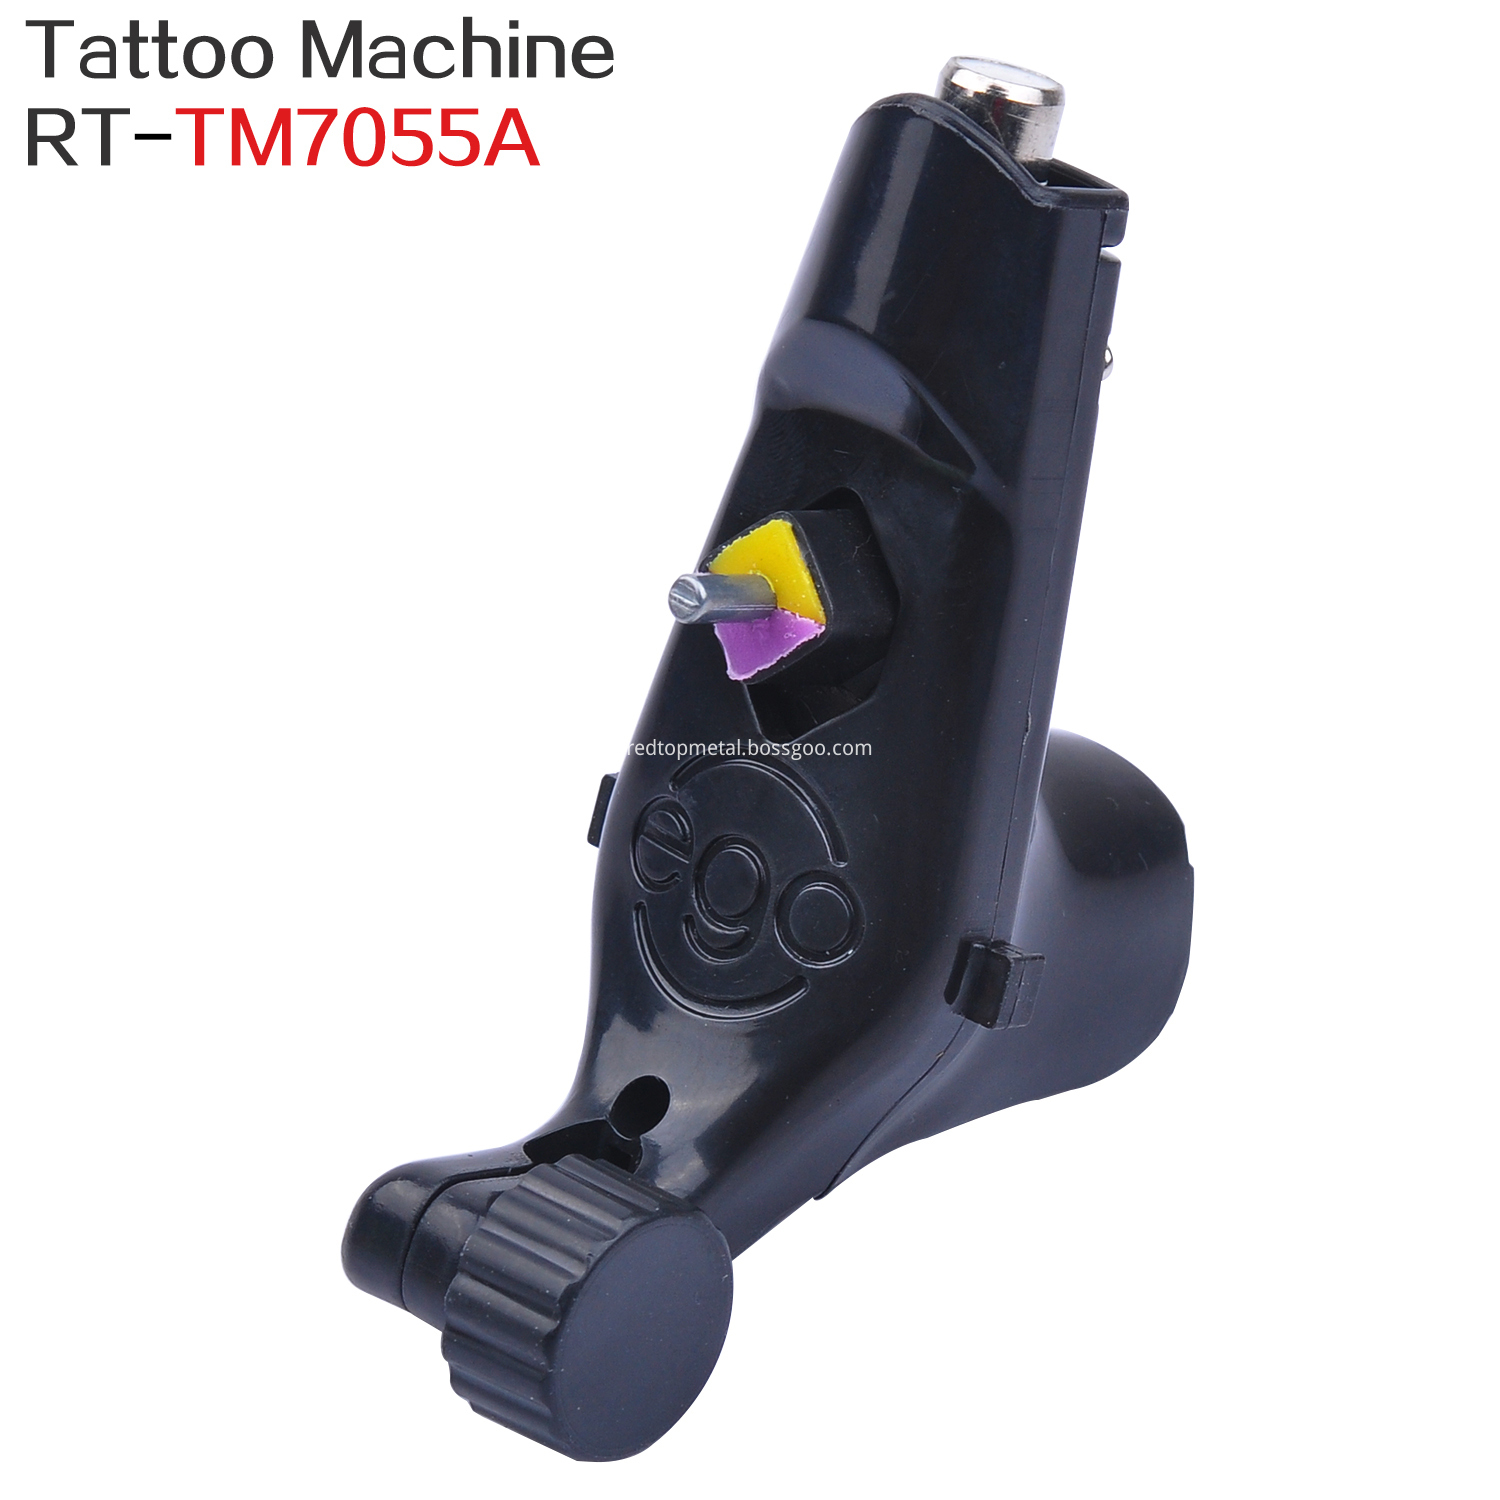 Rotary tattoo machine